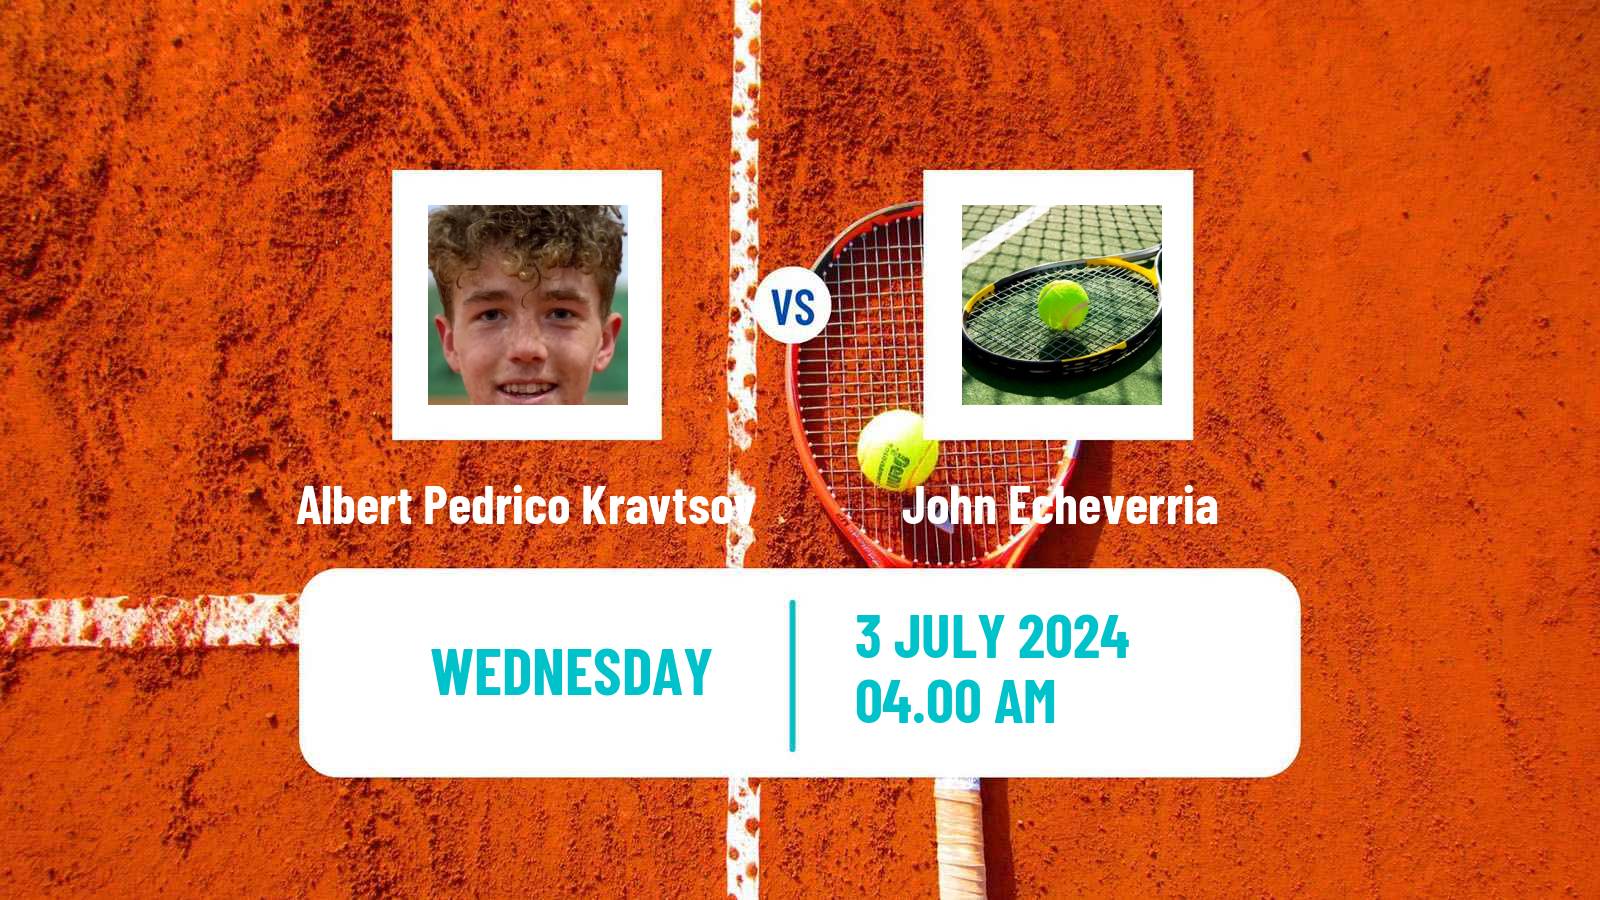 Tennis ITF M25 Getxo Men Albert Pedrico Kravtsov - John Echeverria